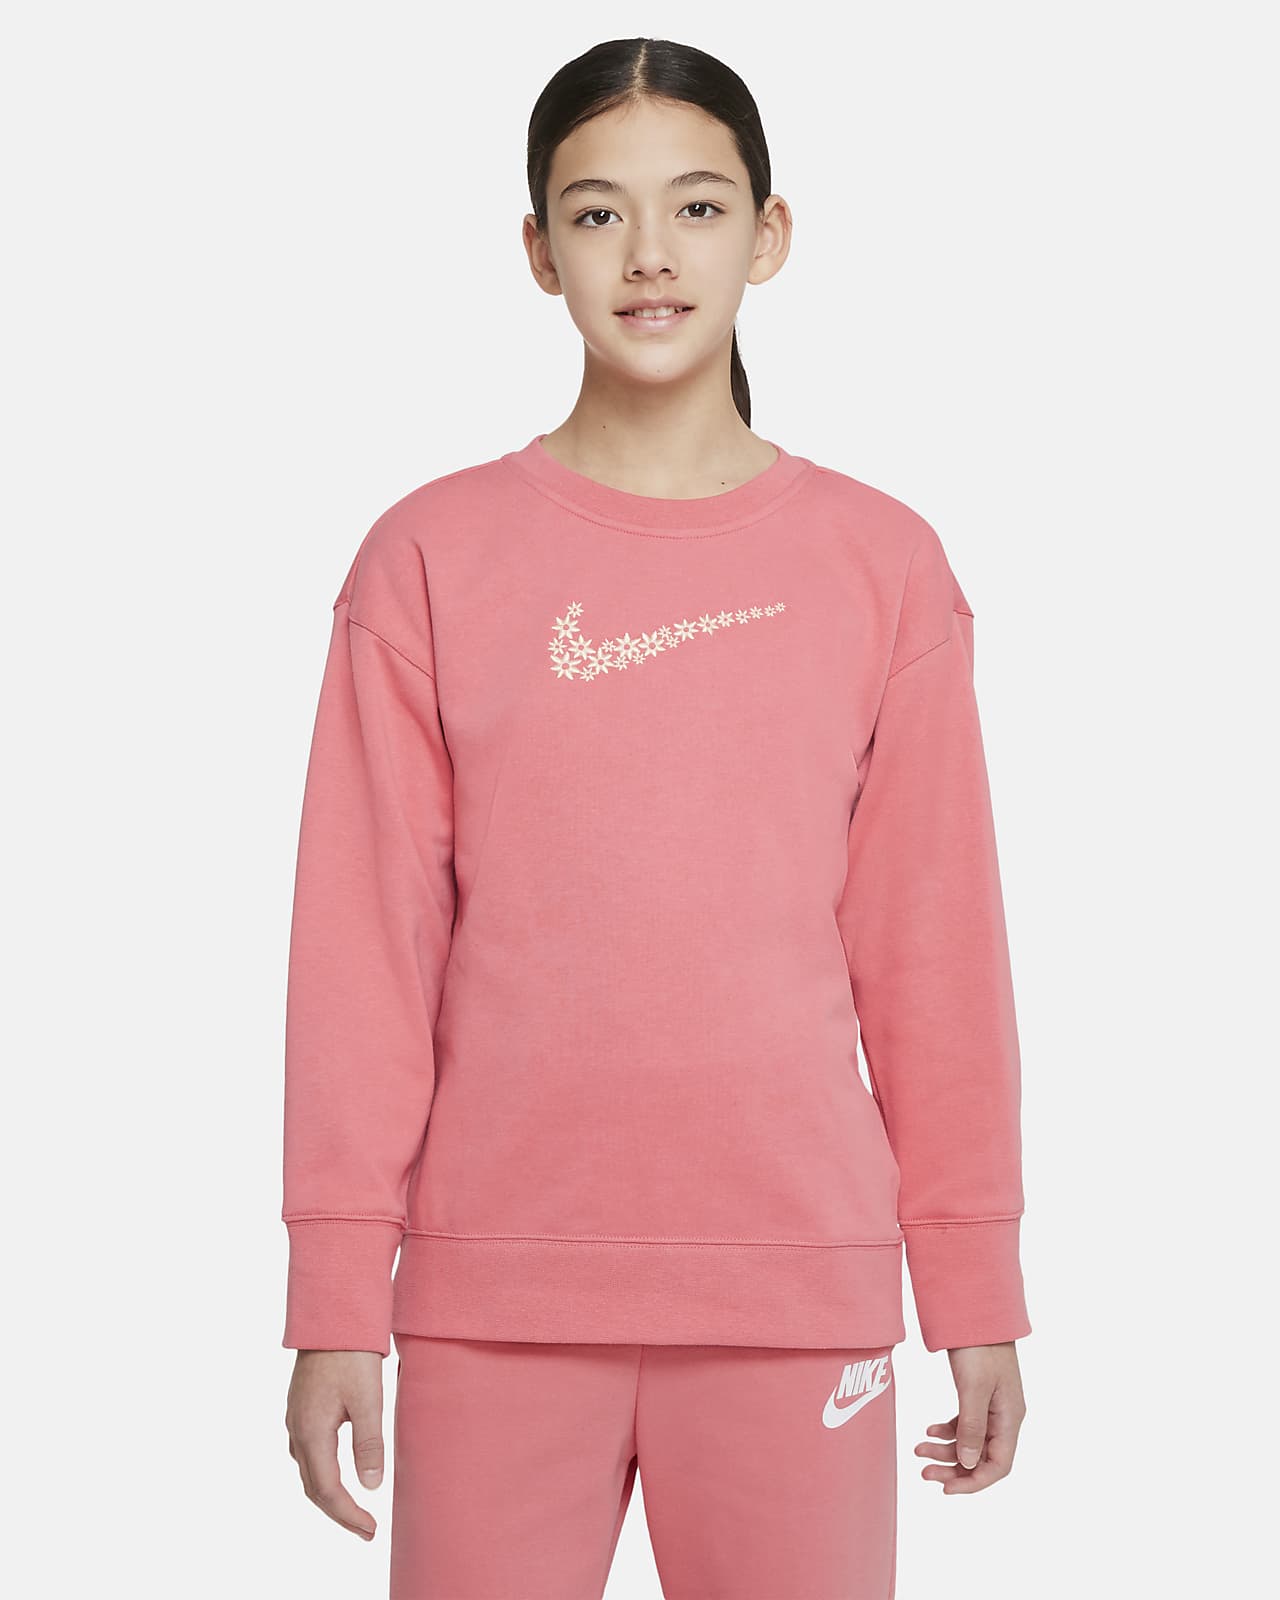 Nike Sportswear Older Kids' (Girls') French Terry Sweatshirt